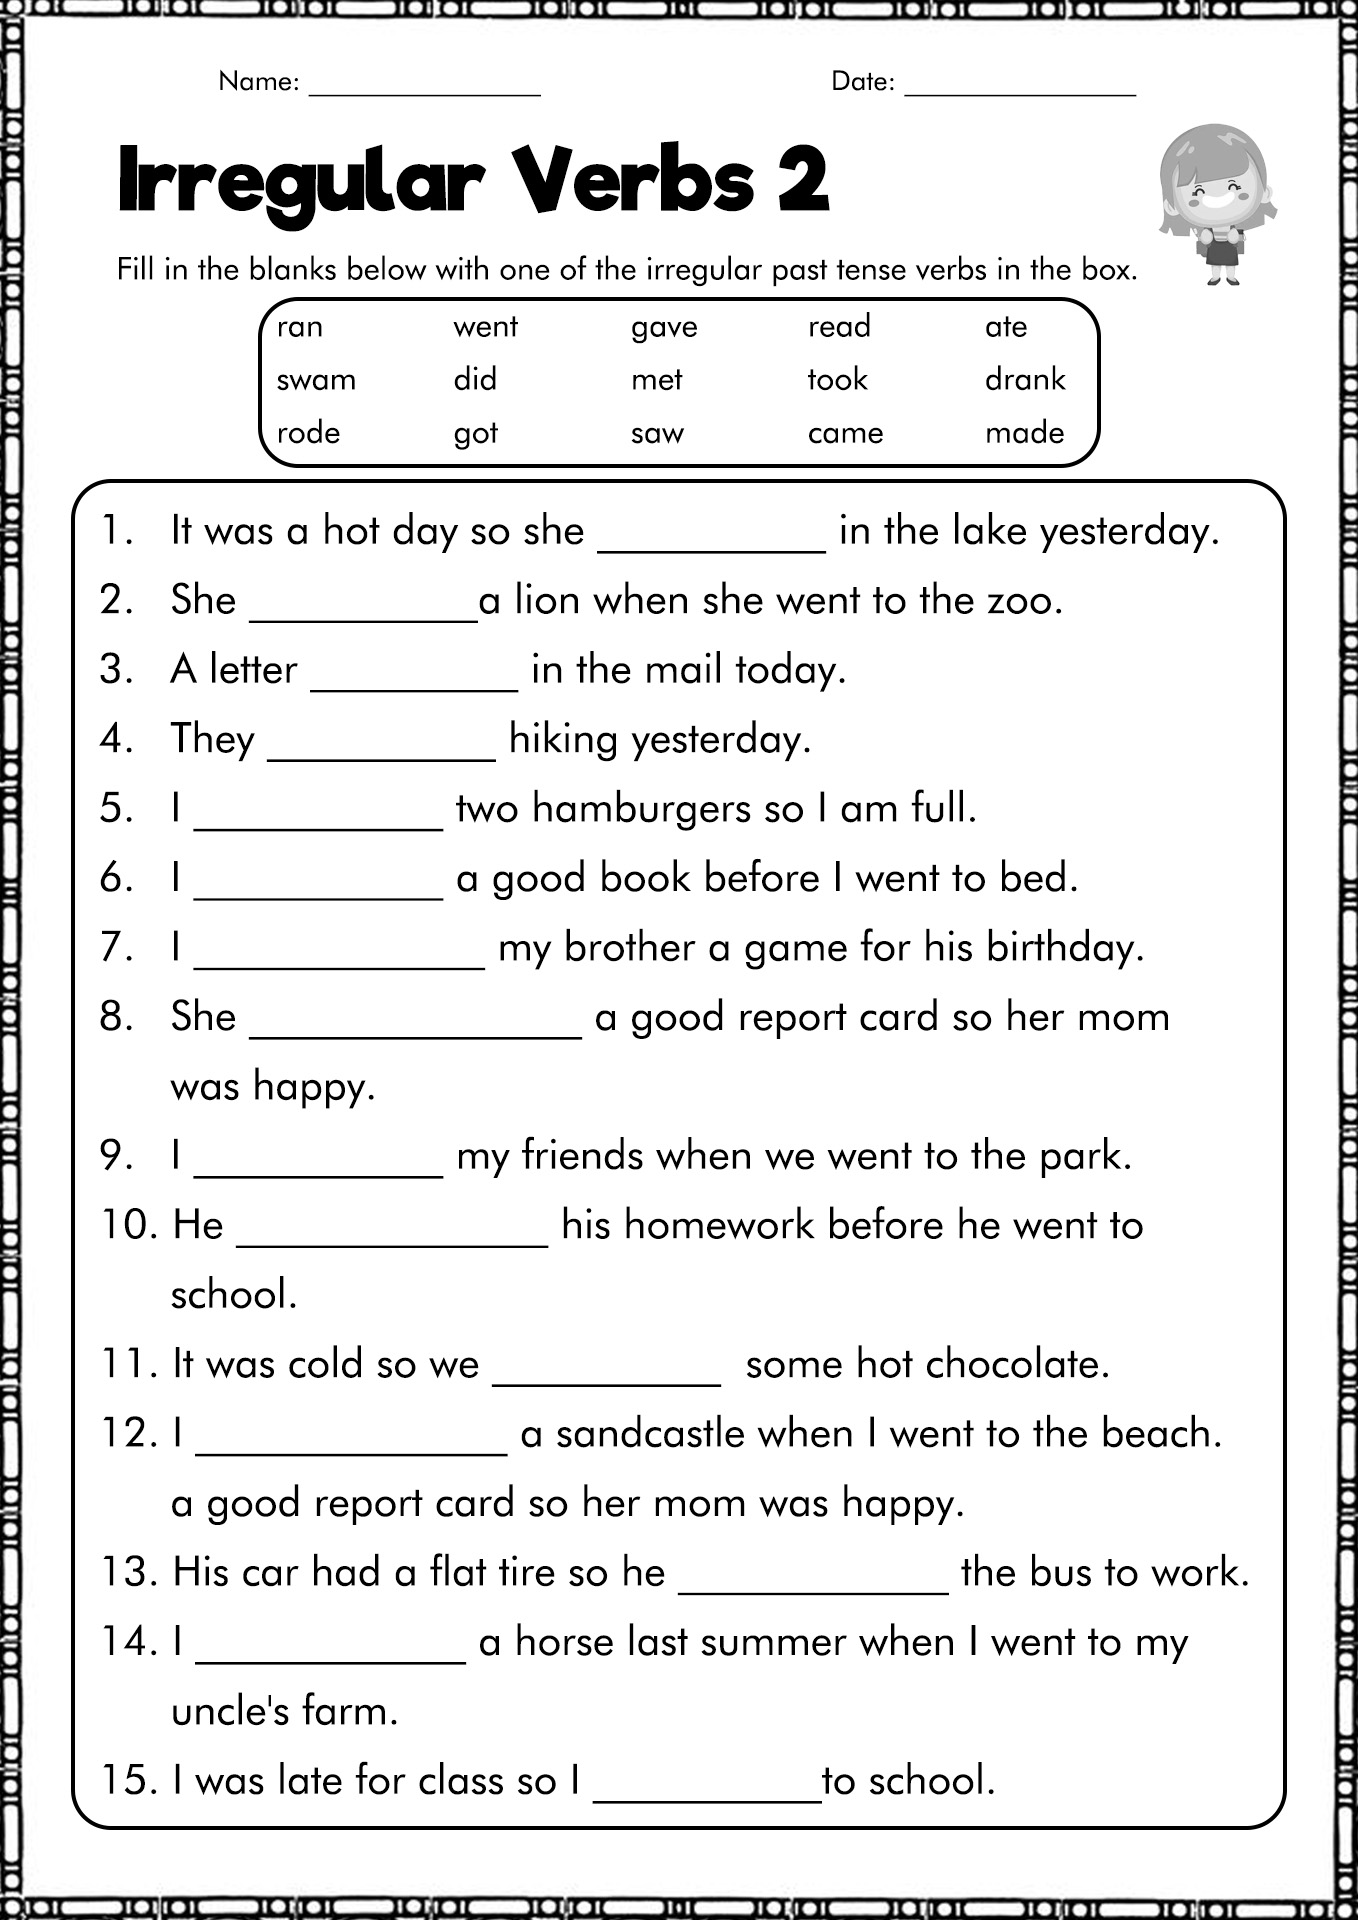 Simple Past Tense Verbs Worksheets